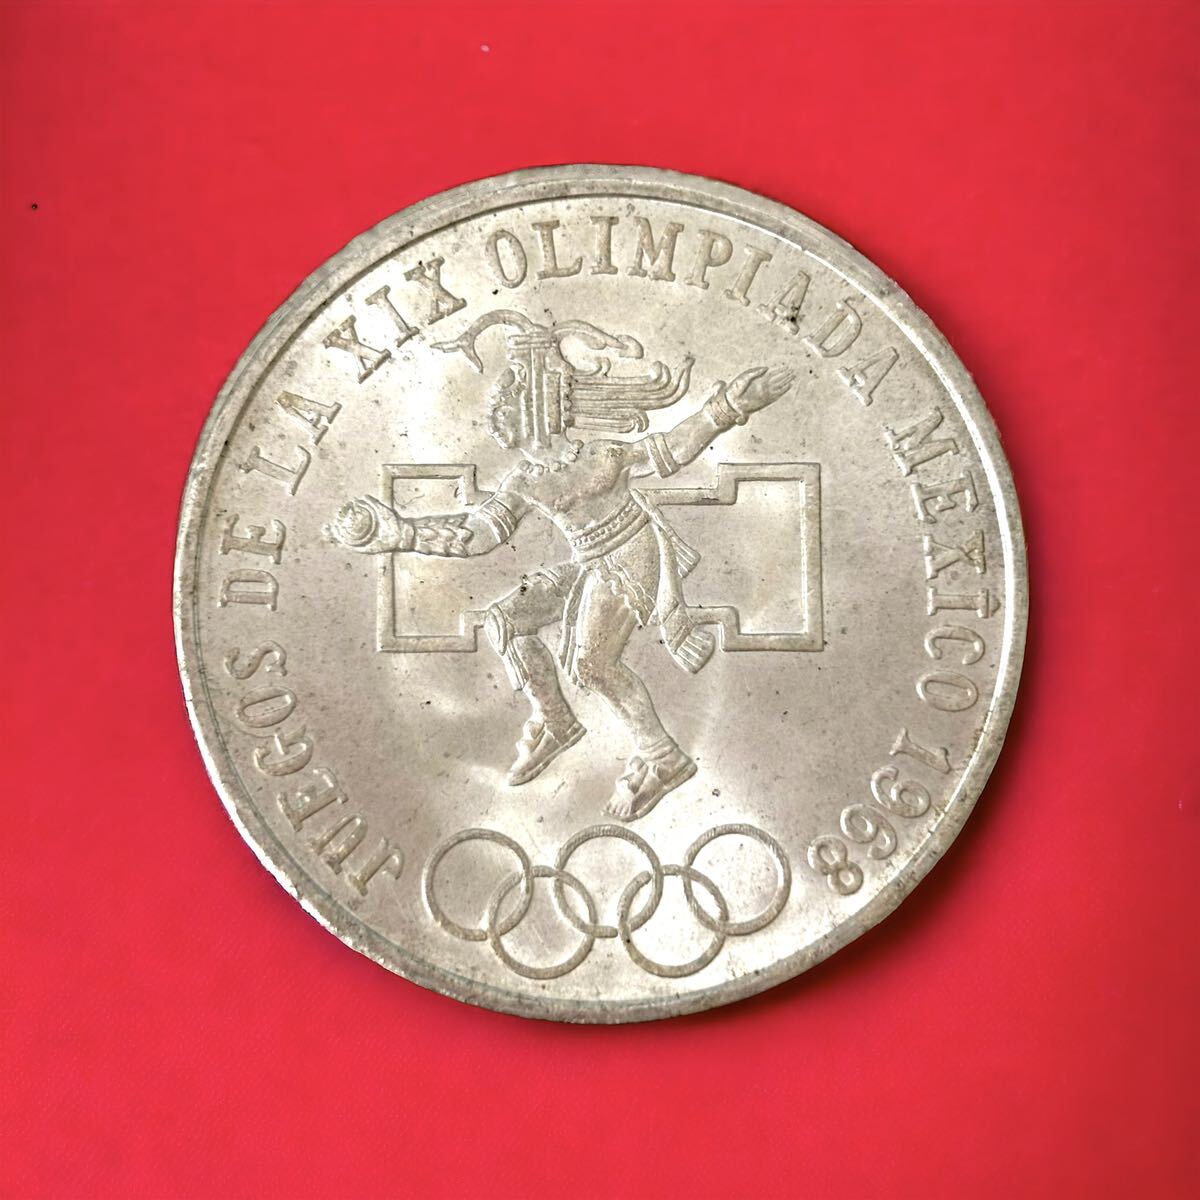 【外国古銭 】 メキシコオリンピック 記念 25ペソ銀貨 1968年 メキシコ五輪 貨幣 外国銭 コイン　_画像1